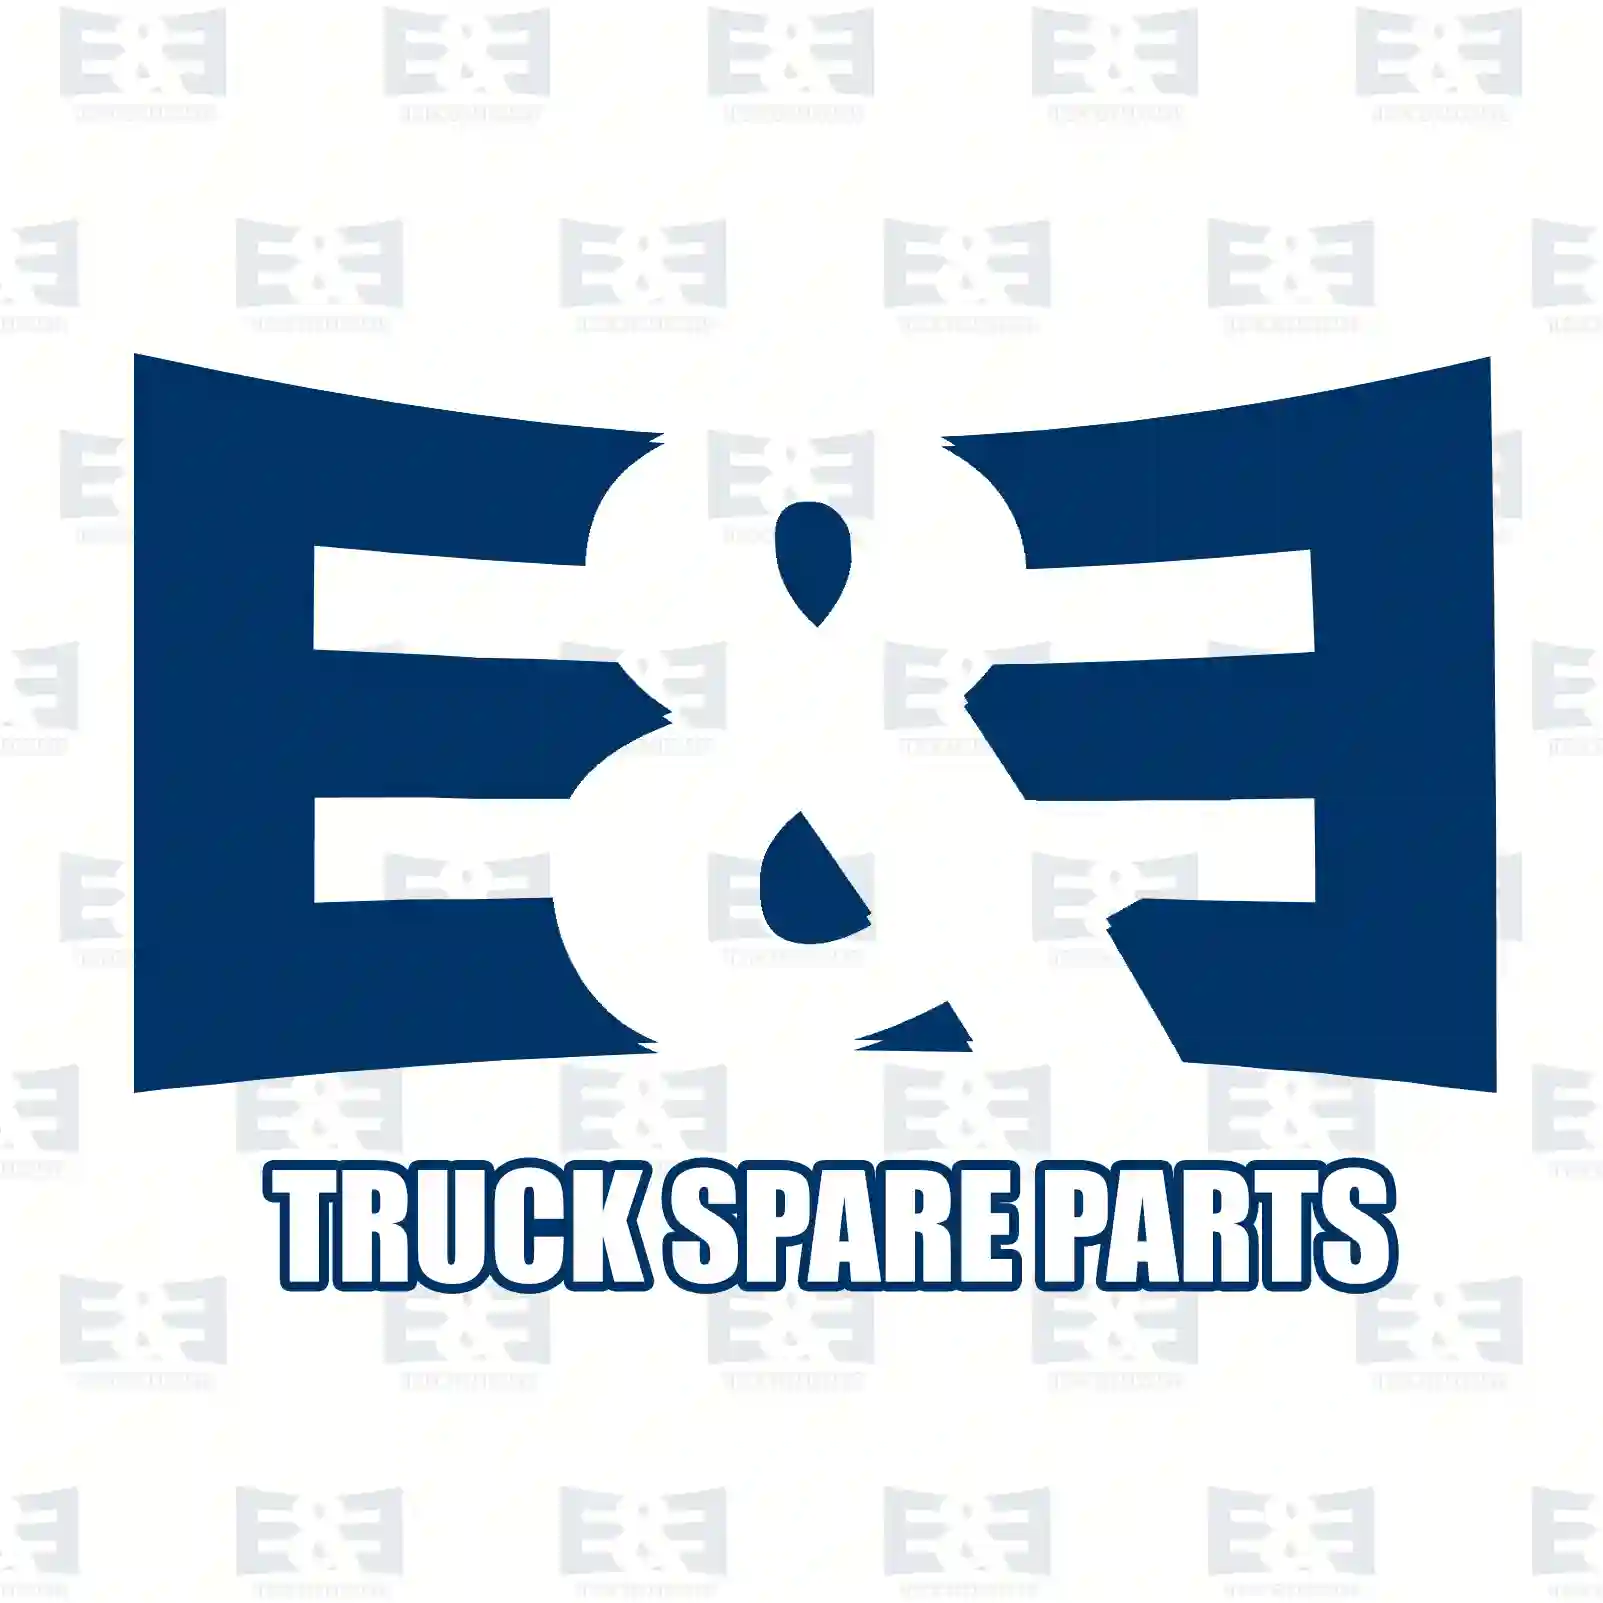 Oil seal, 2E2283452, 0139976546, 0159977746, 0169972045 ||  2E2283452 E&E Truck Spare Parts | Truck Spare Parts, Auotomotive Spare Parts Oil seal, 2E2283452, 0139976546, 0159977746, 0169972045 ||  2E2283452 E&E Truck Spare Parts | Truck Spare Parts, Auotomotive Spare Parts